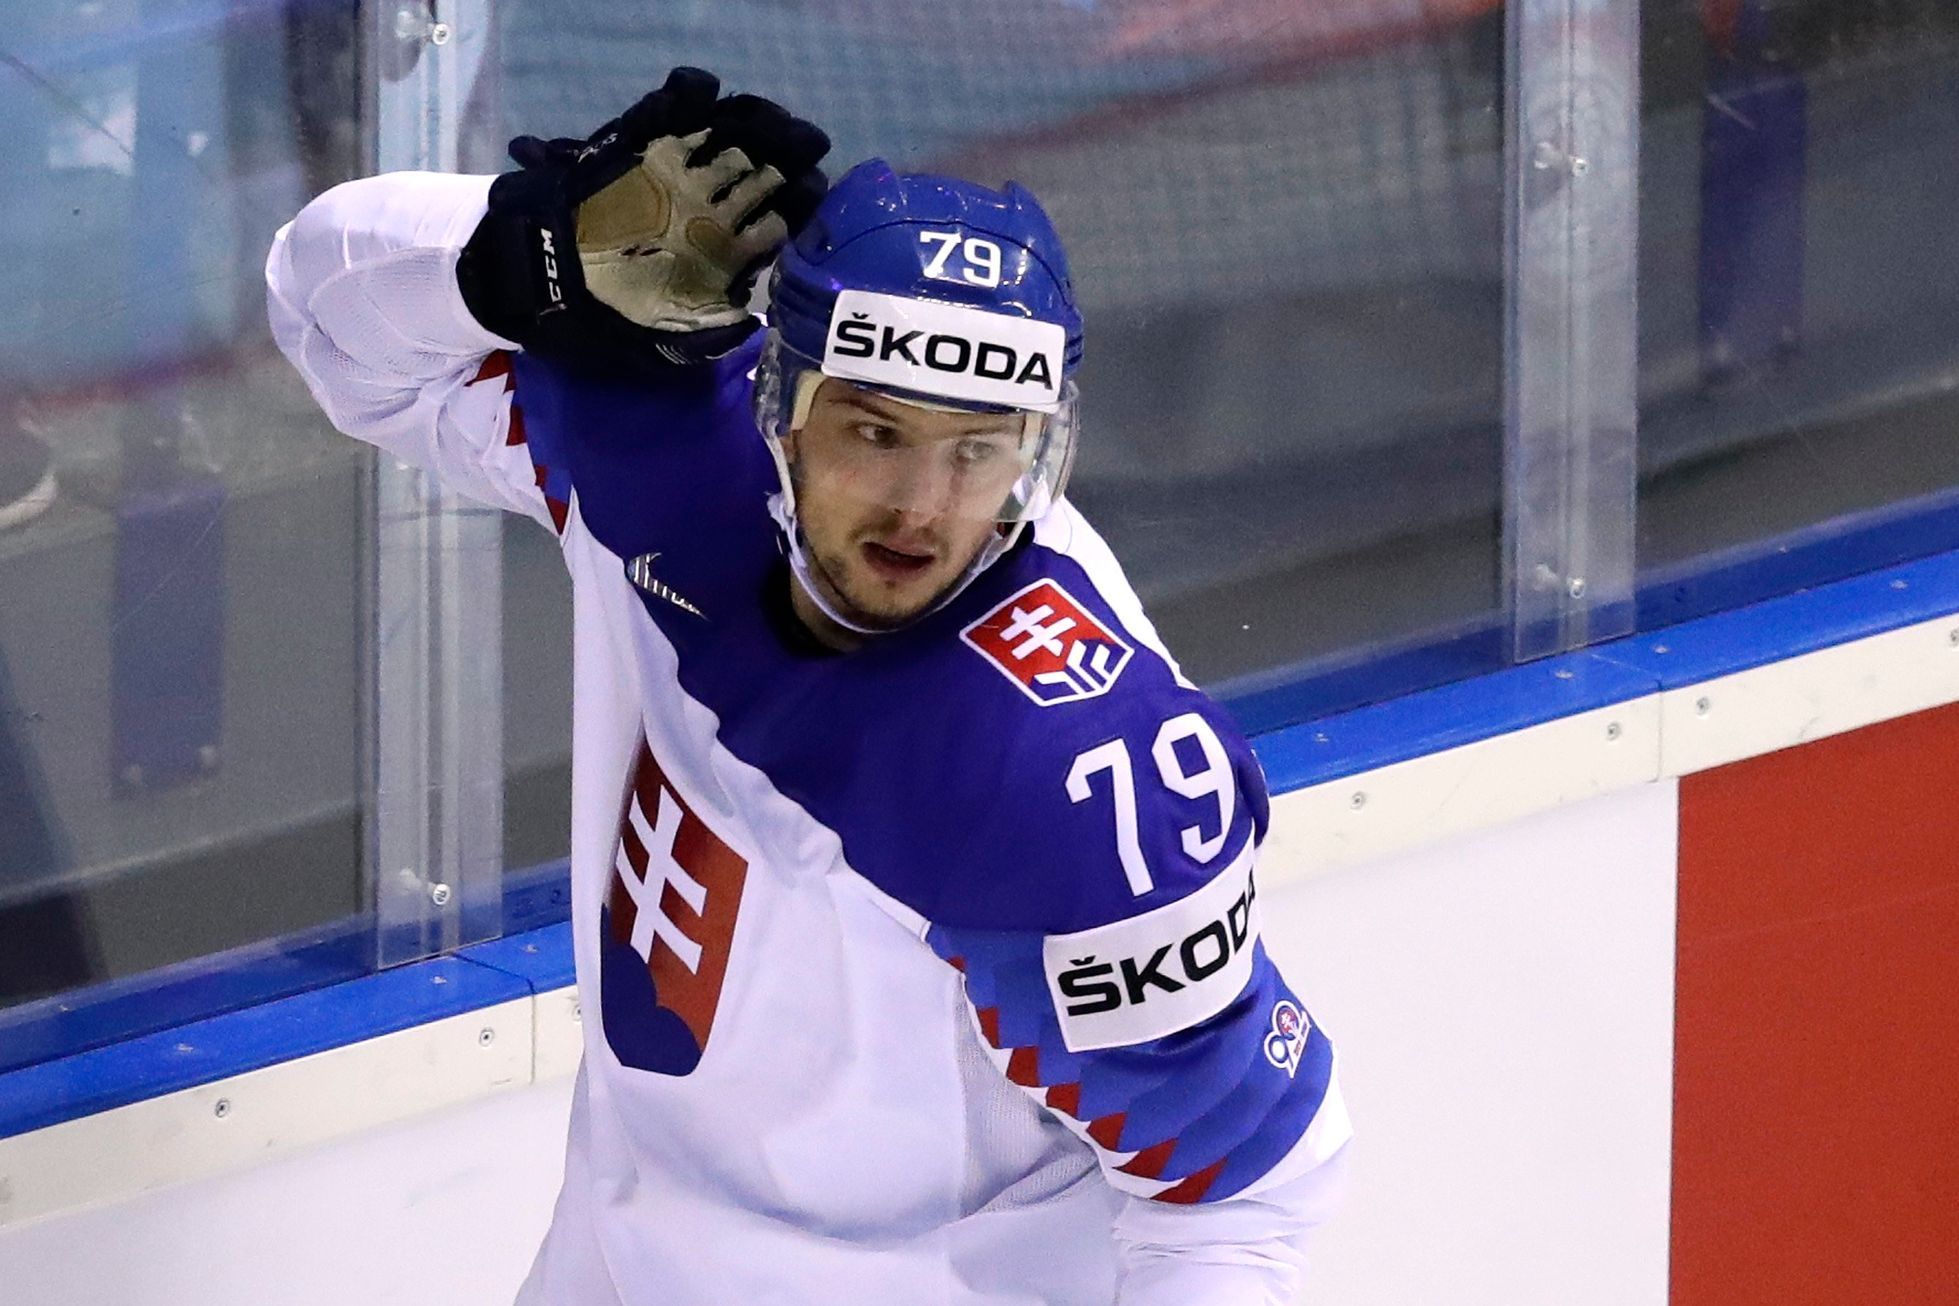 Útočník slovenské hokejové reprezentace Libor Hudáček teď poslouchá na mistrovství světa kritiku za své výroky po utkání s Velkou Británií